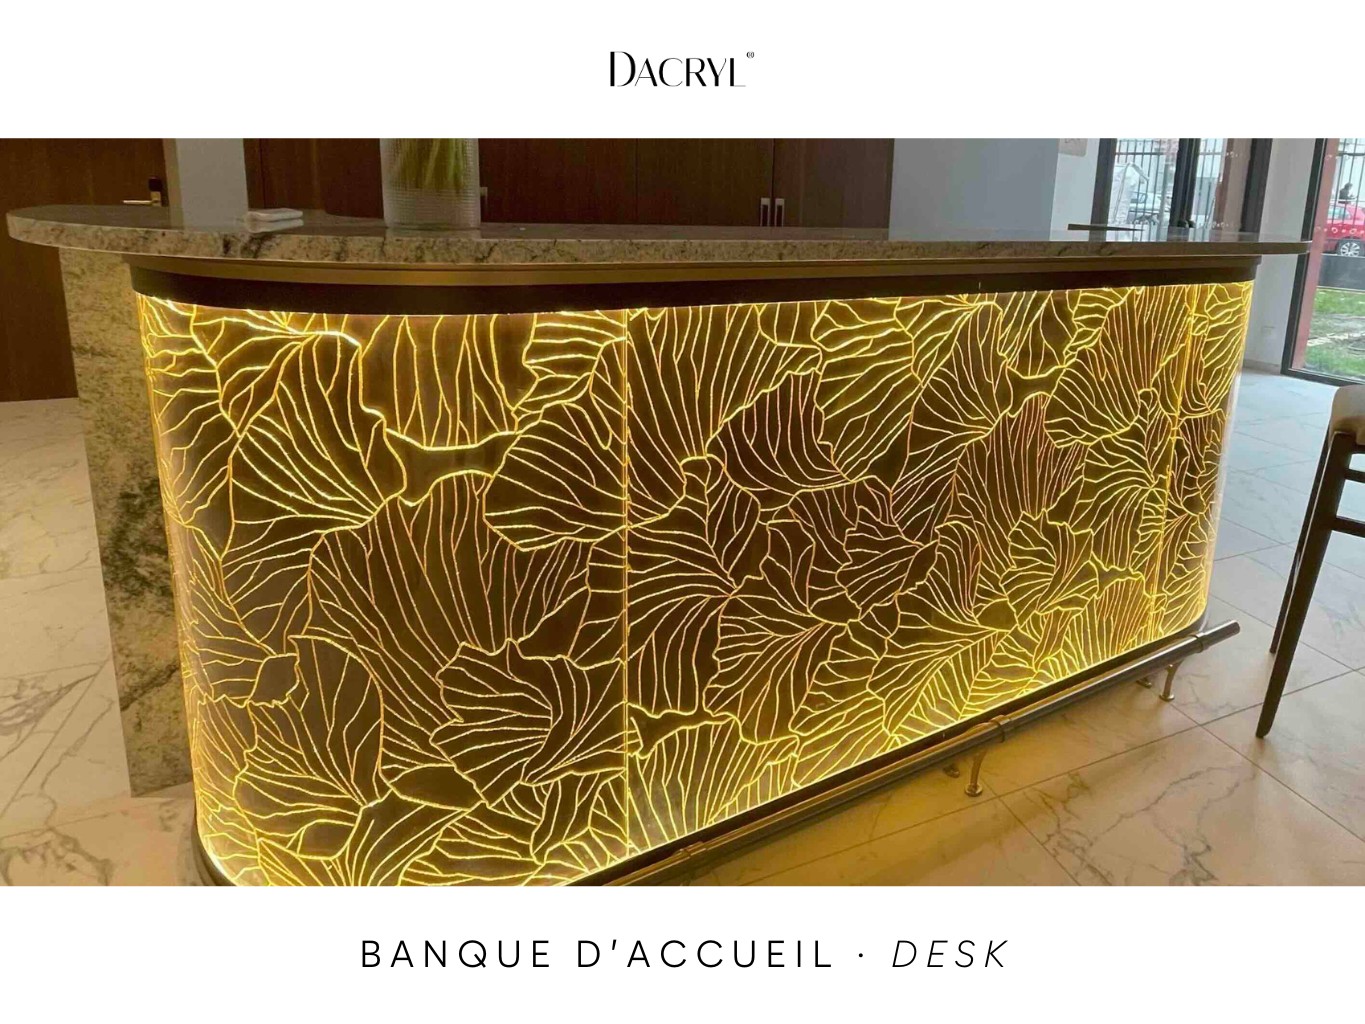 DACRYL - Desk